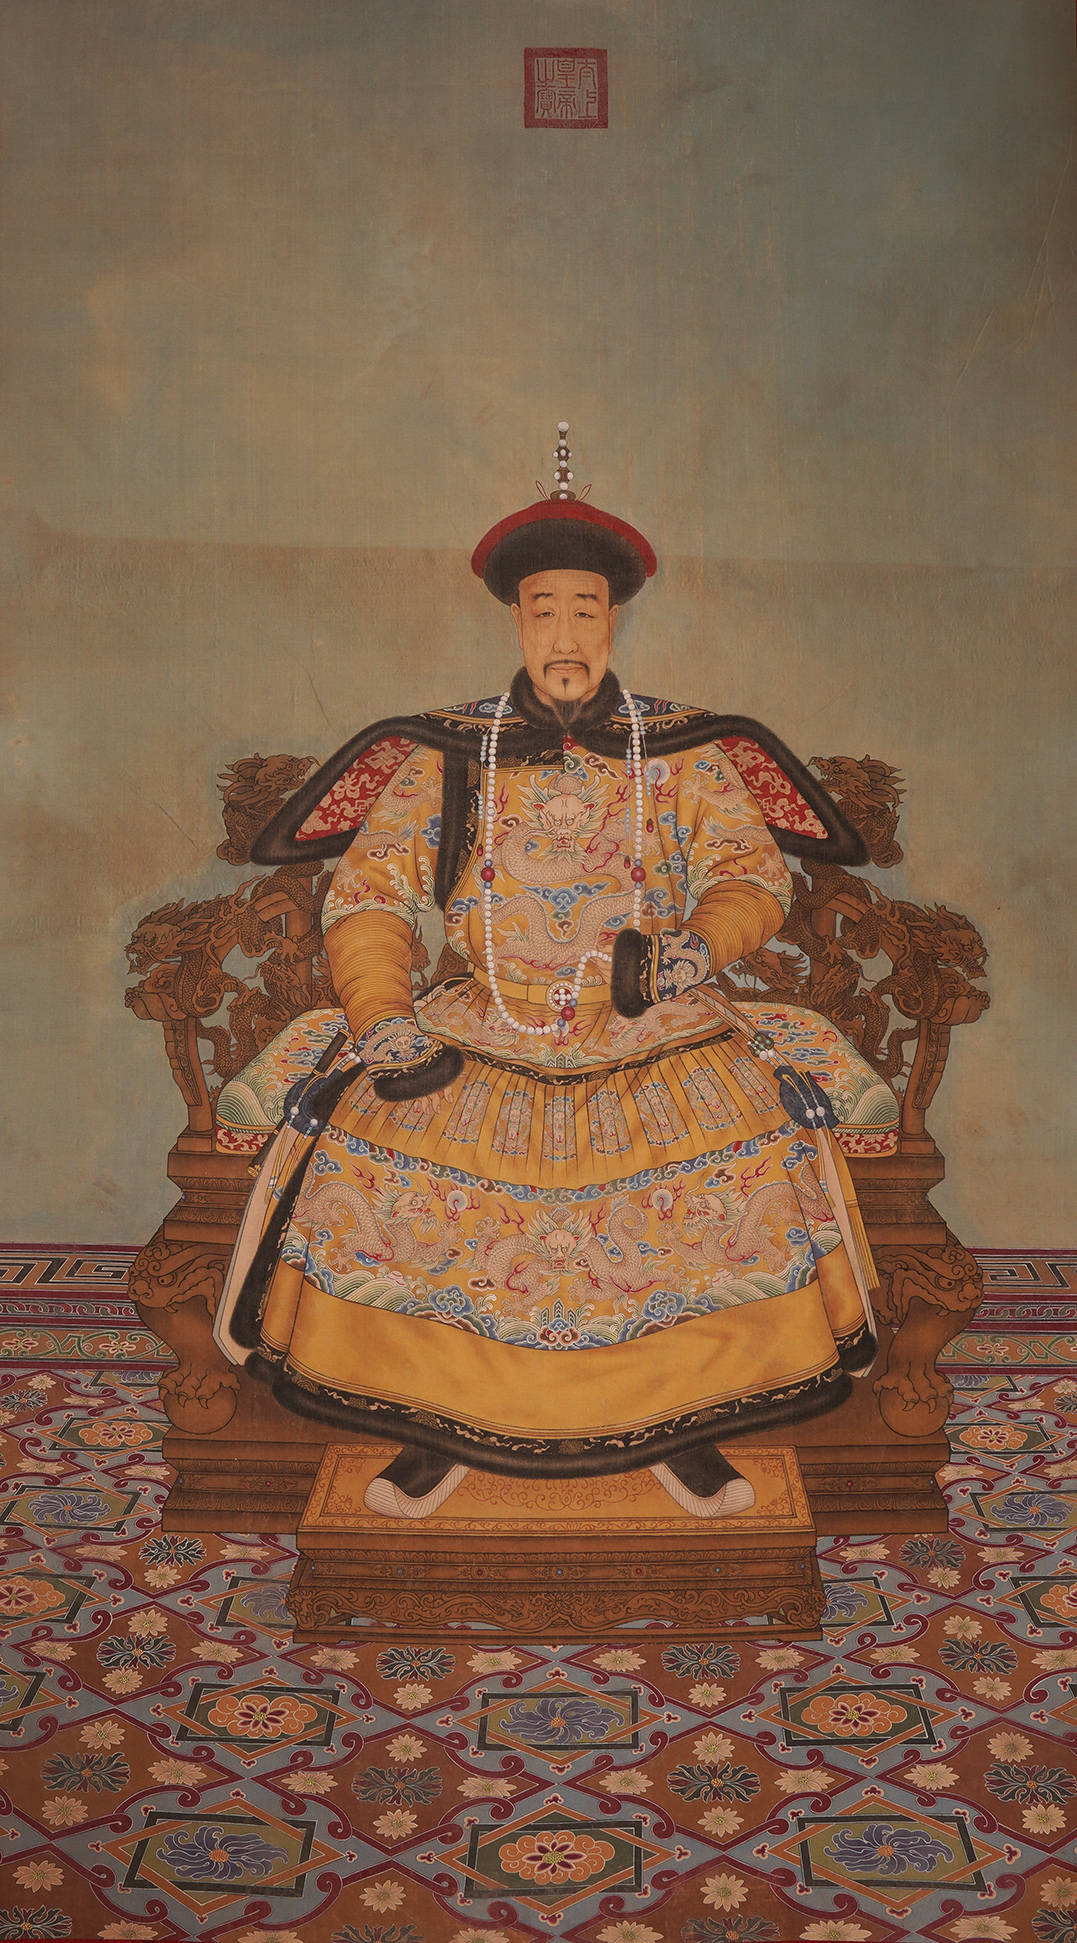 清朝皇帝画像图片大全图片